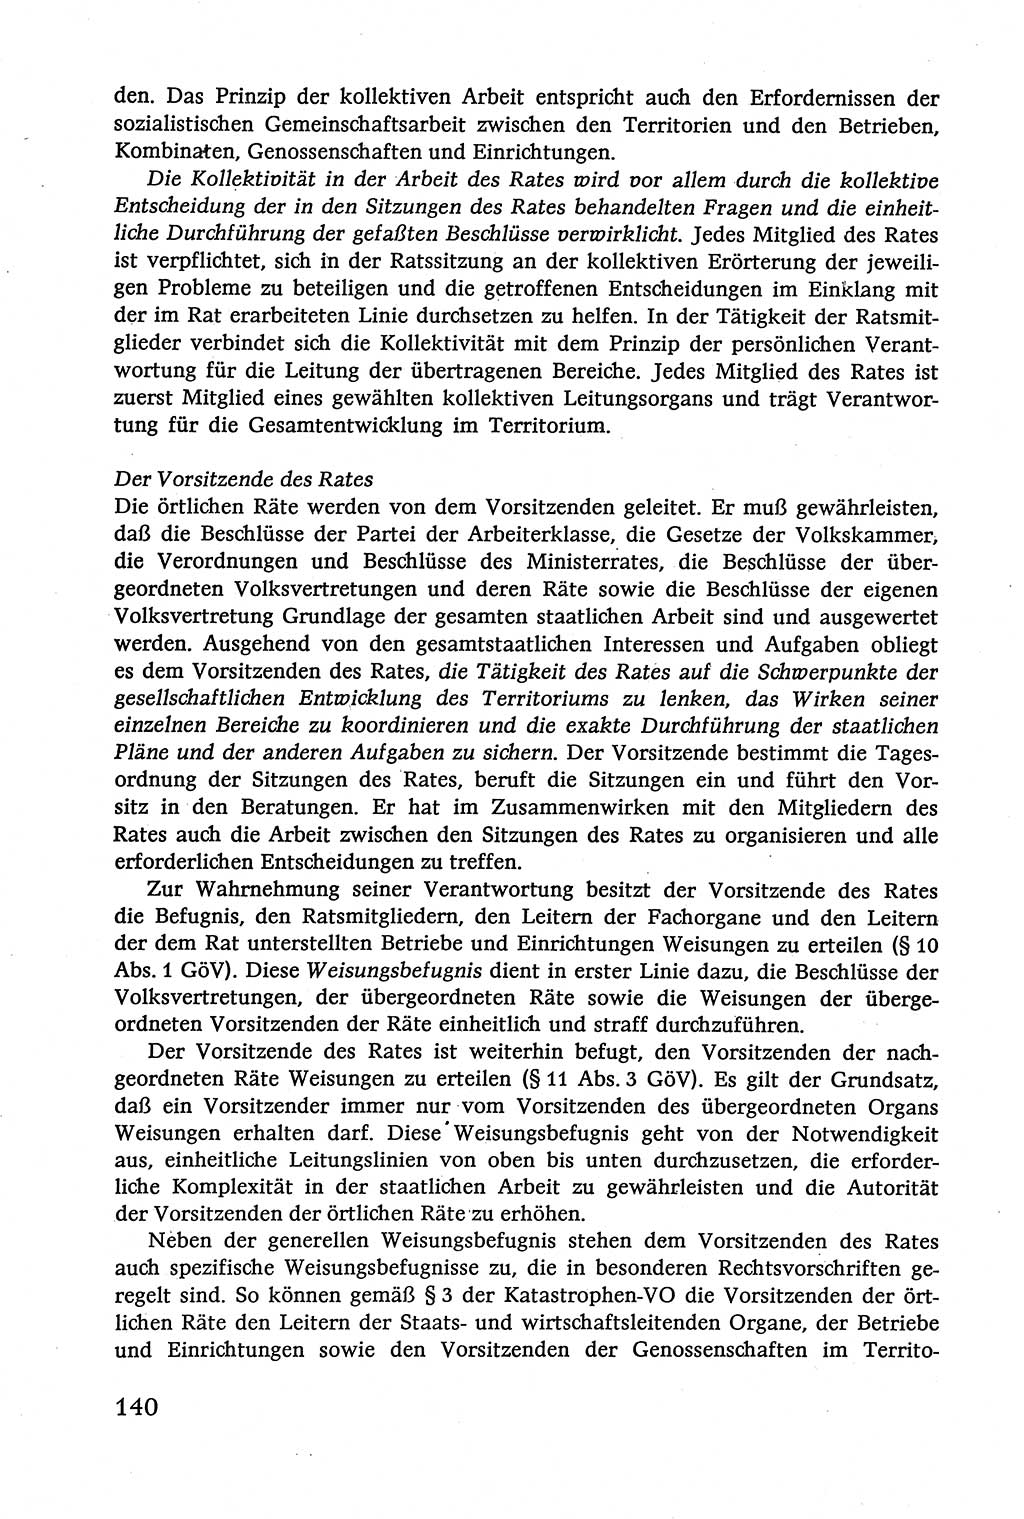 Verwaltungsrecht [Deutsche Demokratische Republik (DDR)], Lehrbuch 1979, Seite 140 (Verw.-R. DDR Lb. 1979, S. 140)